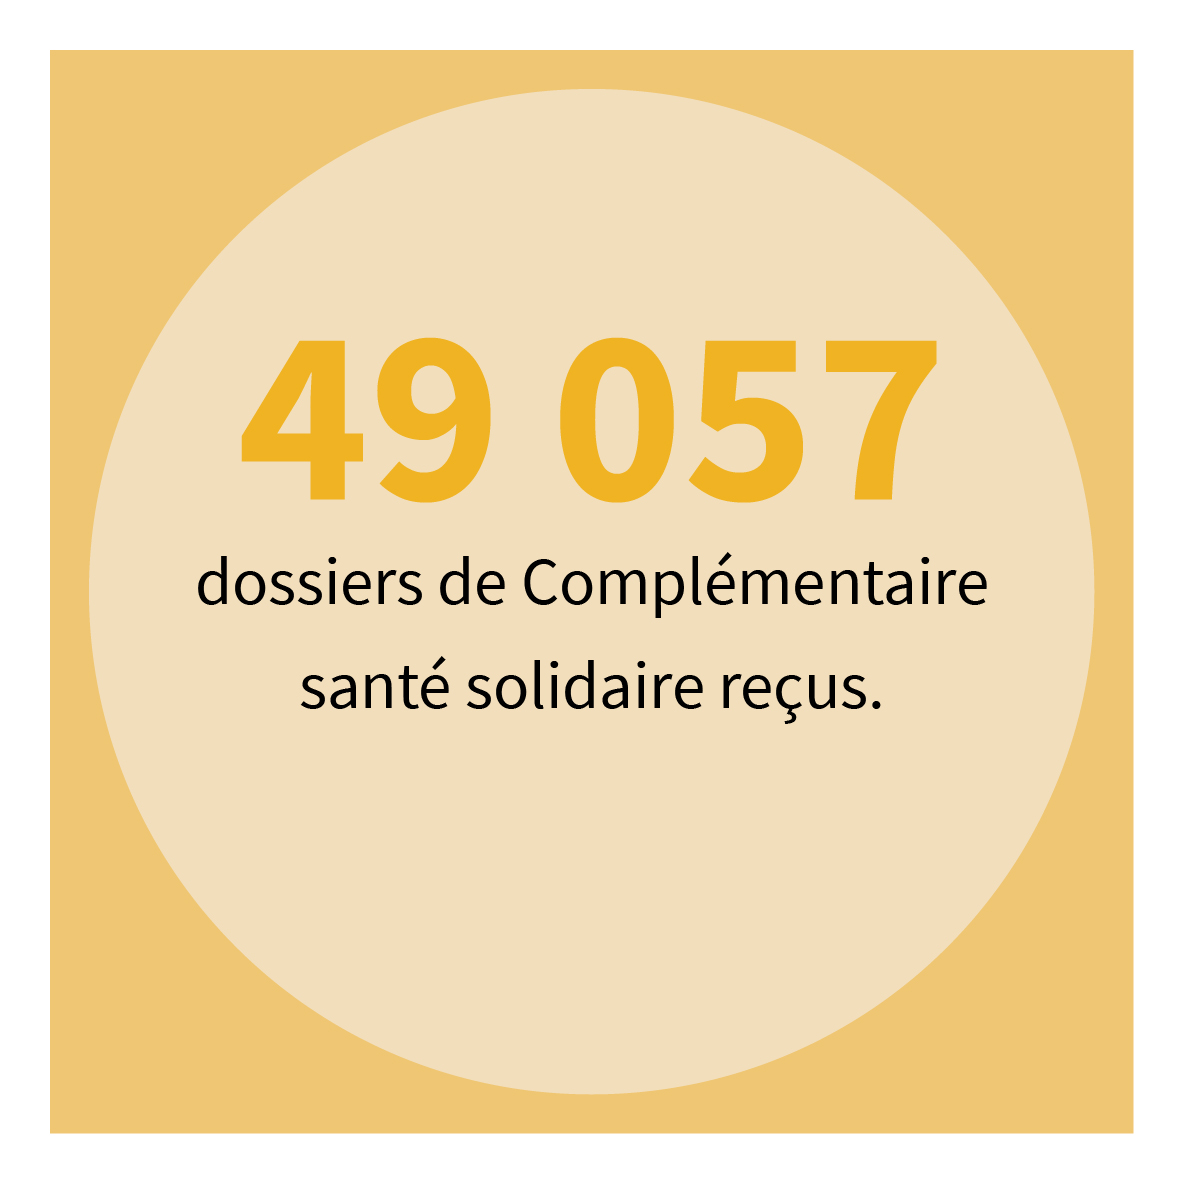 49 057 dossiers de Complémentaire santé solidaire reçus.